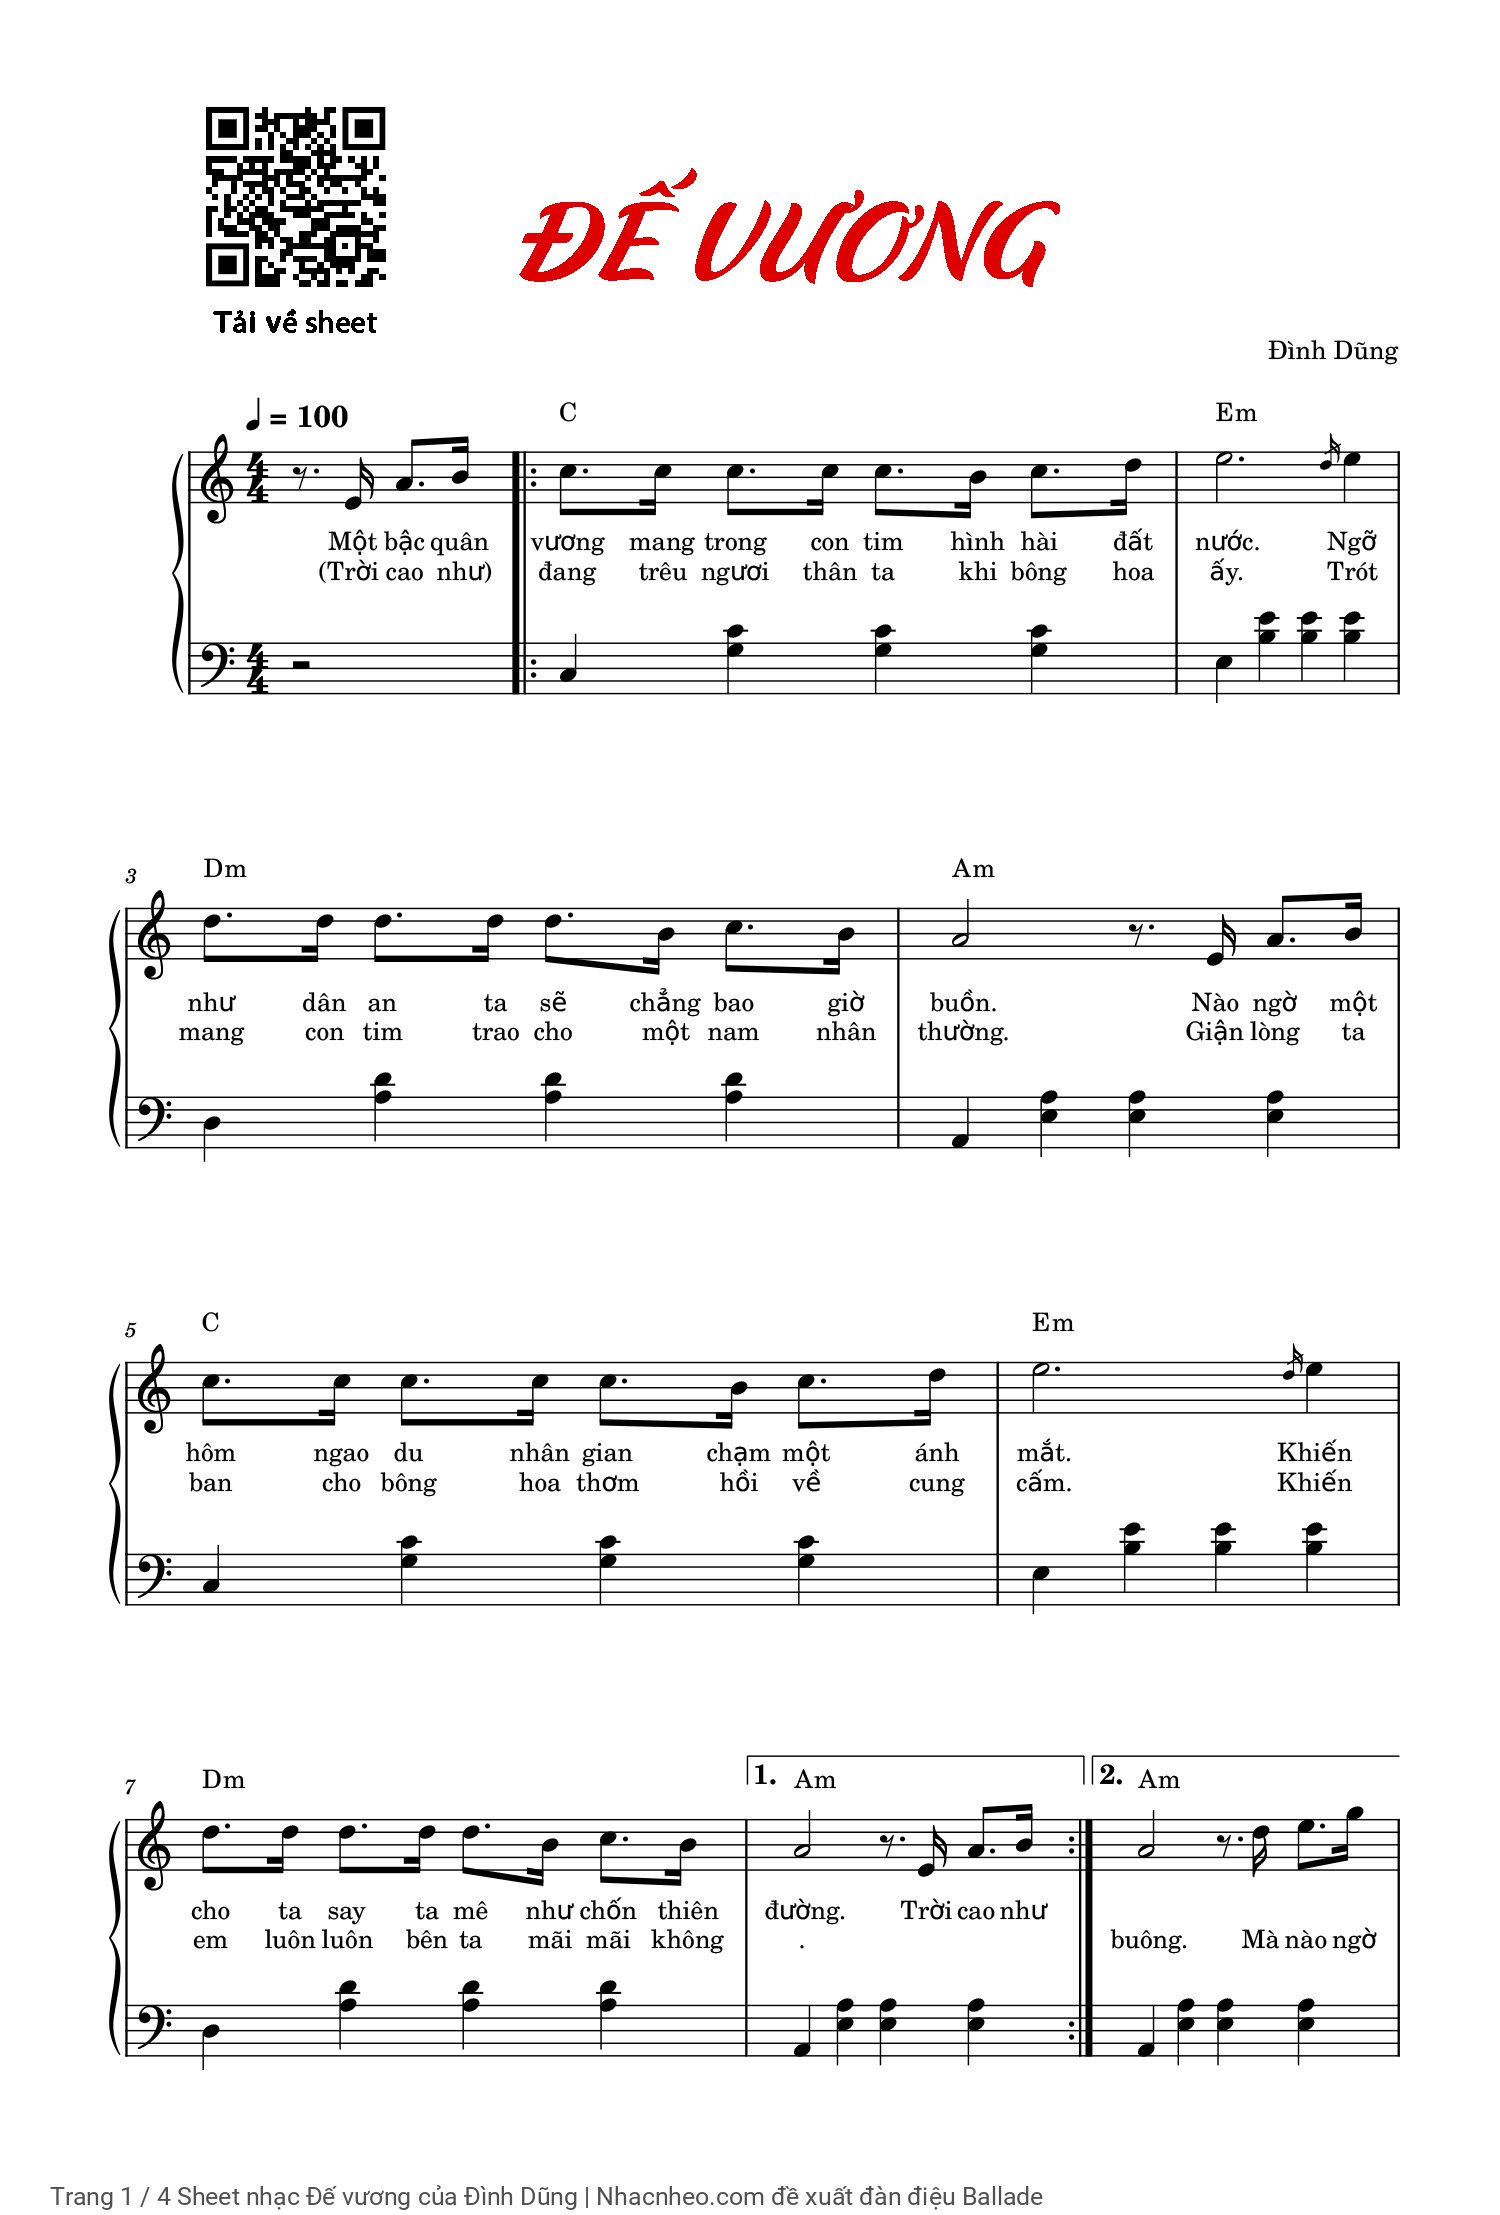 Trang 1 của Sheet nhạc PDF Piano bài hát Đế vương - Đình Dũng